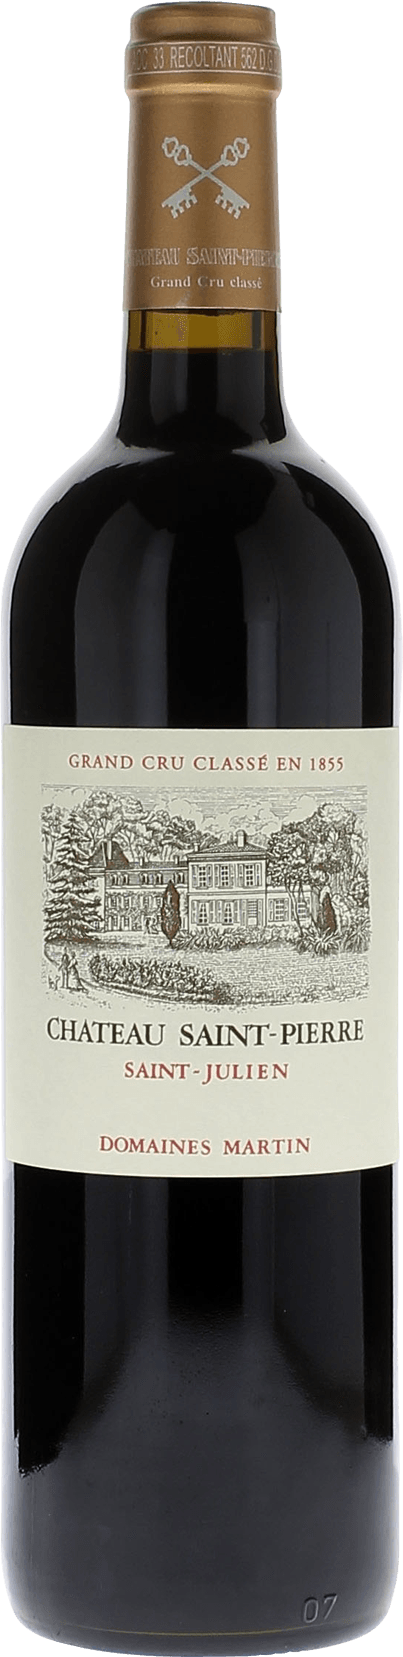 Saint pierre 2016 4me Grand cru class Saint-Julien, Bordeaux rouge